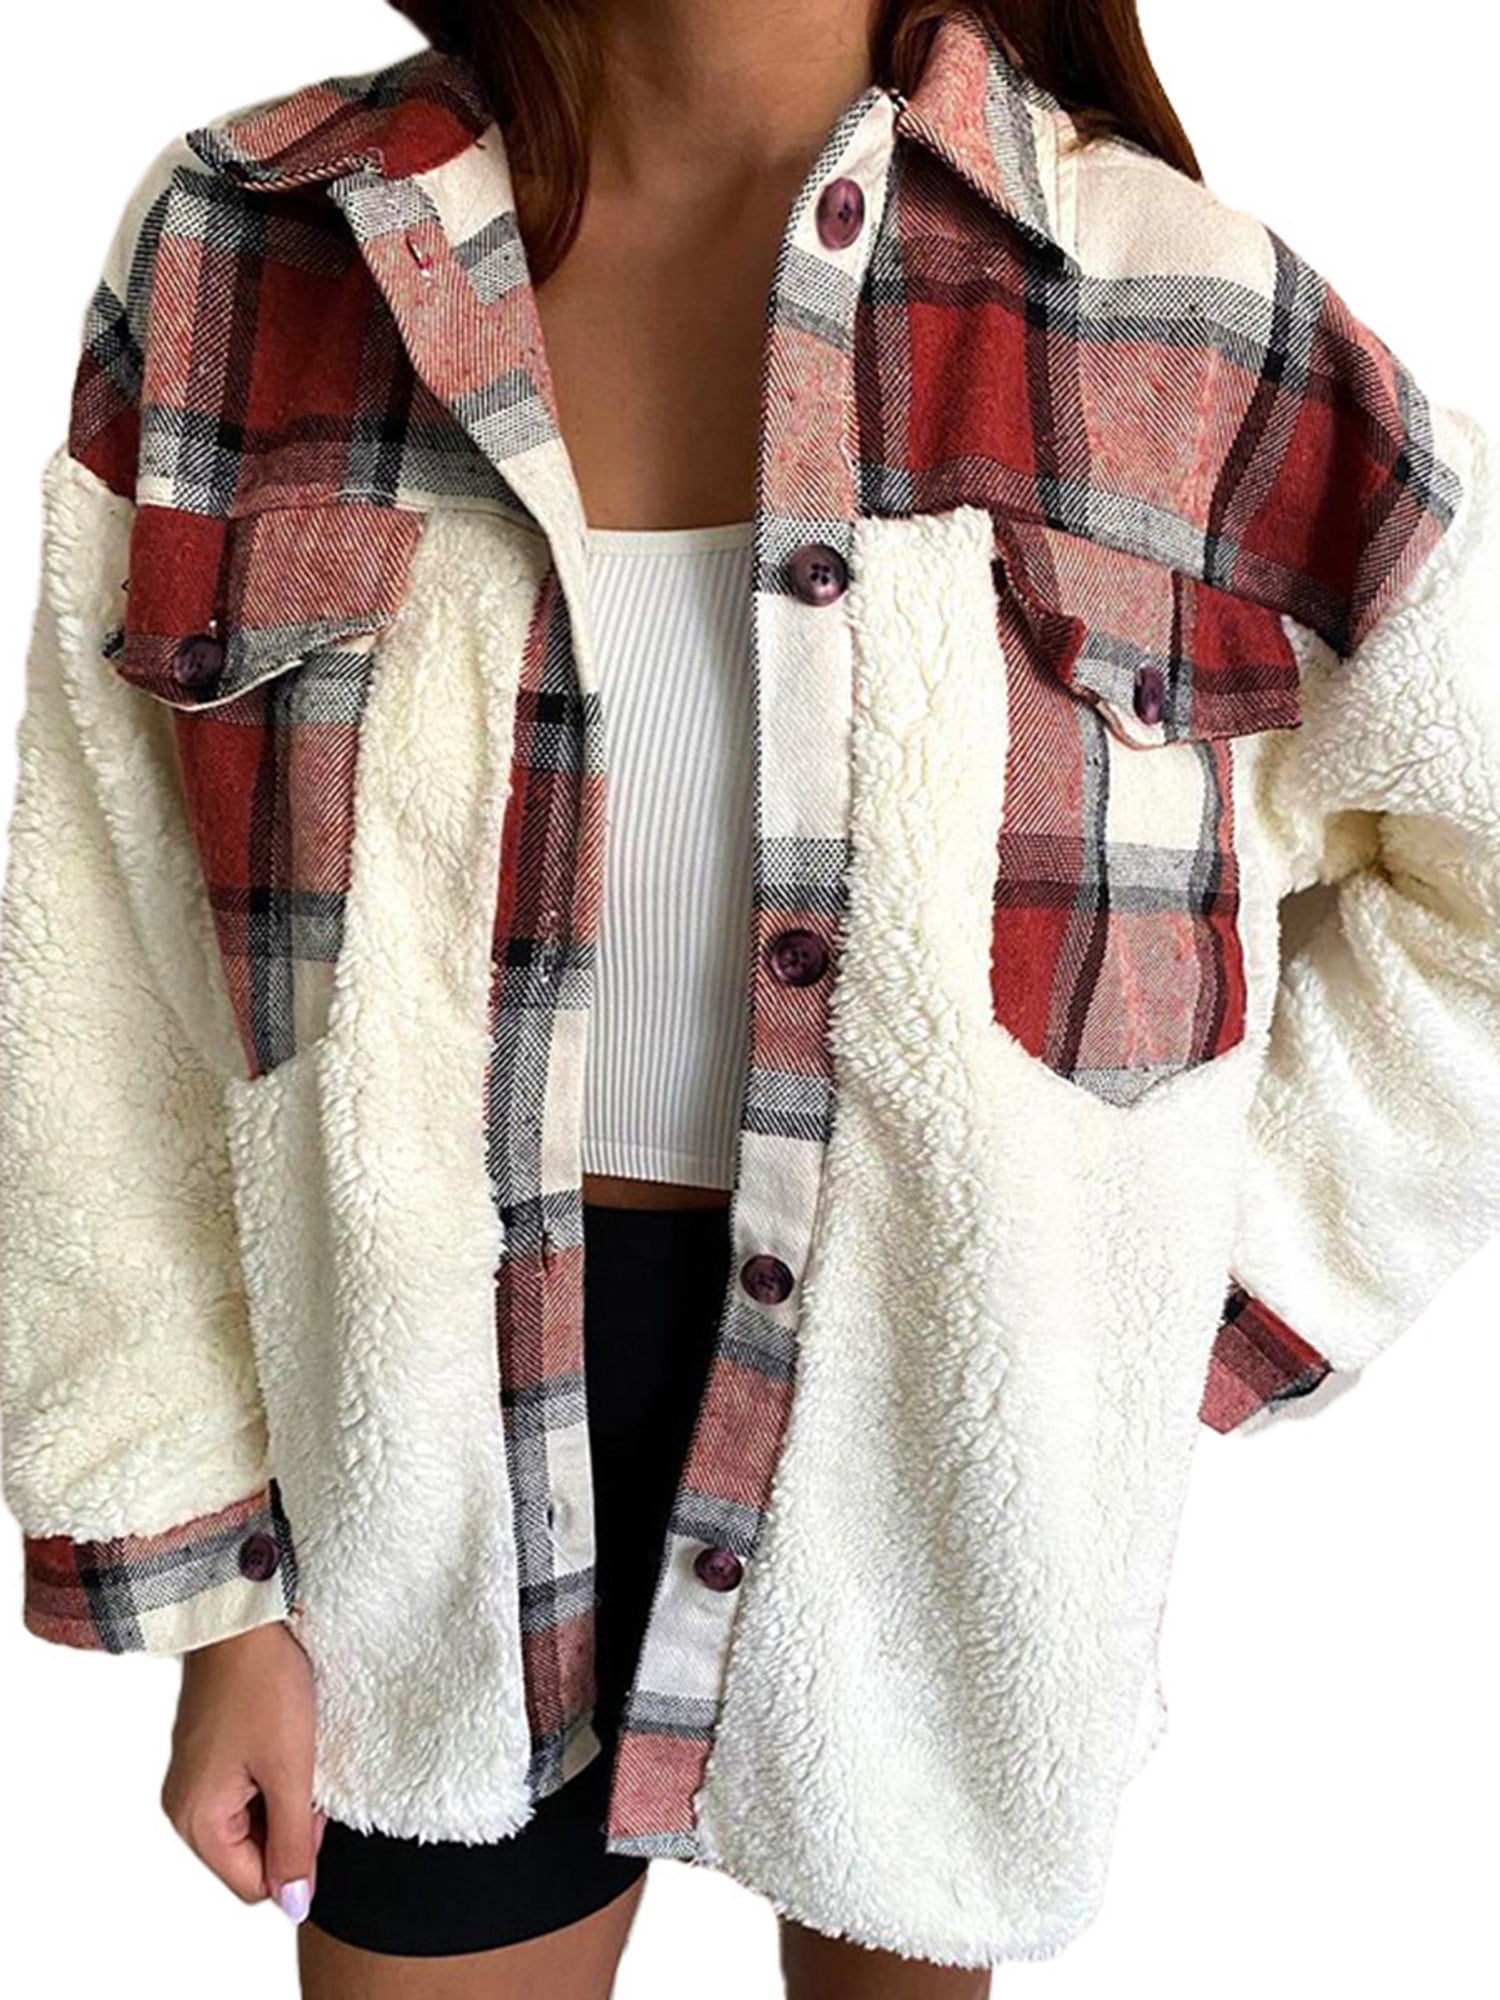 Nirovien Women Plaid Sherpa Hooded Cardigan Fuzzy Fleece Jacket Reversible Teddy Coat Outerwear with Pockets 